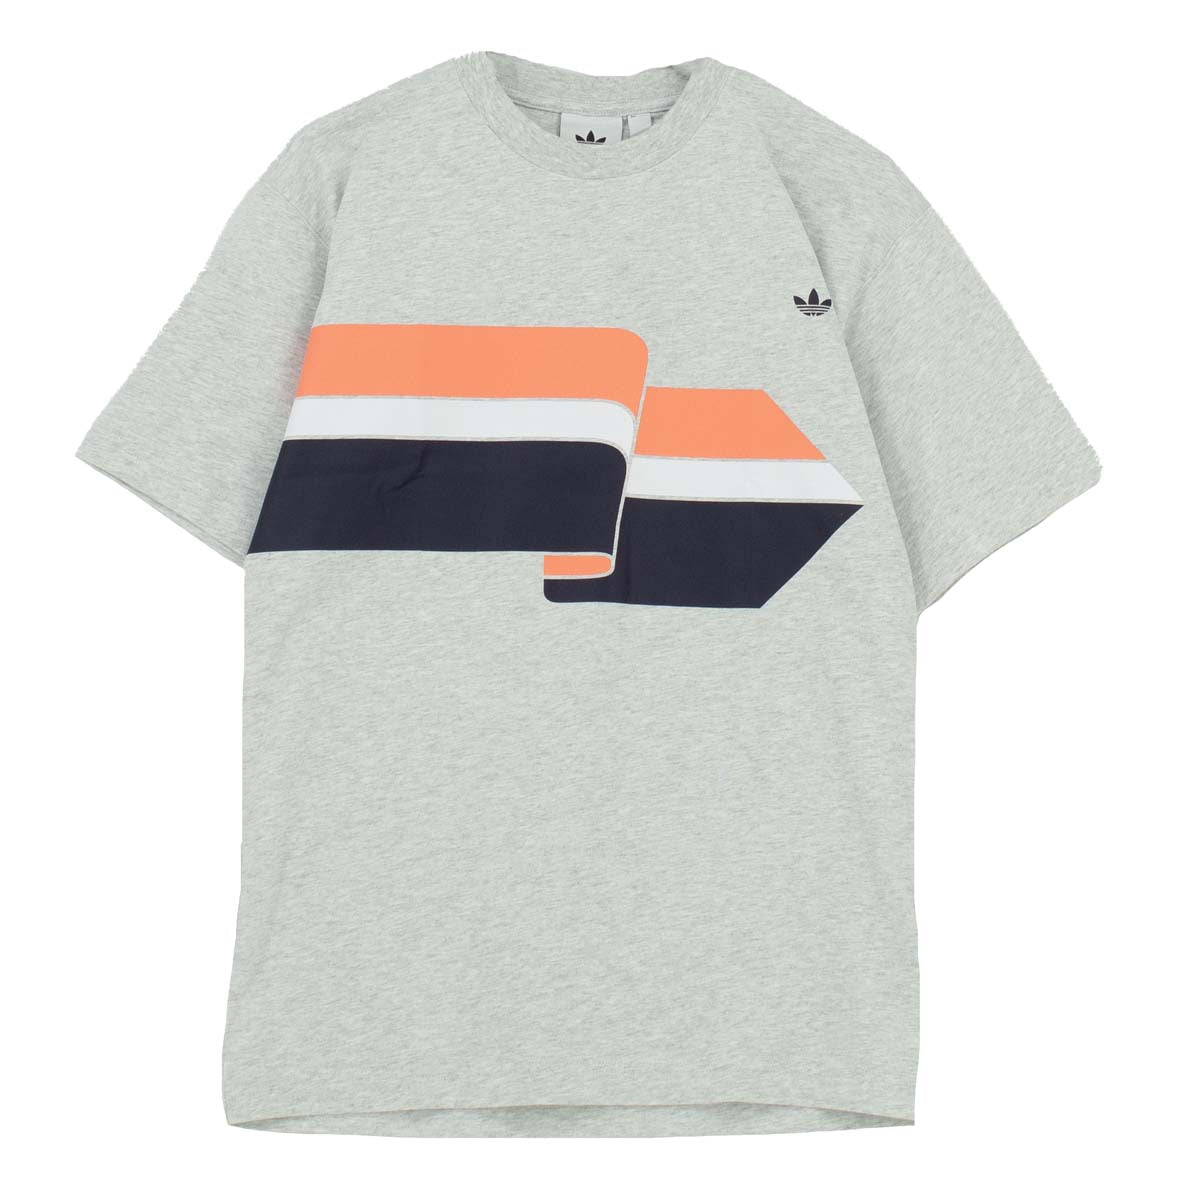 Adidas Originals Ripple Tee Herren T-Shirt kurzarm Shirt FM1532 M